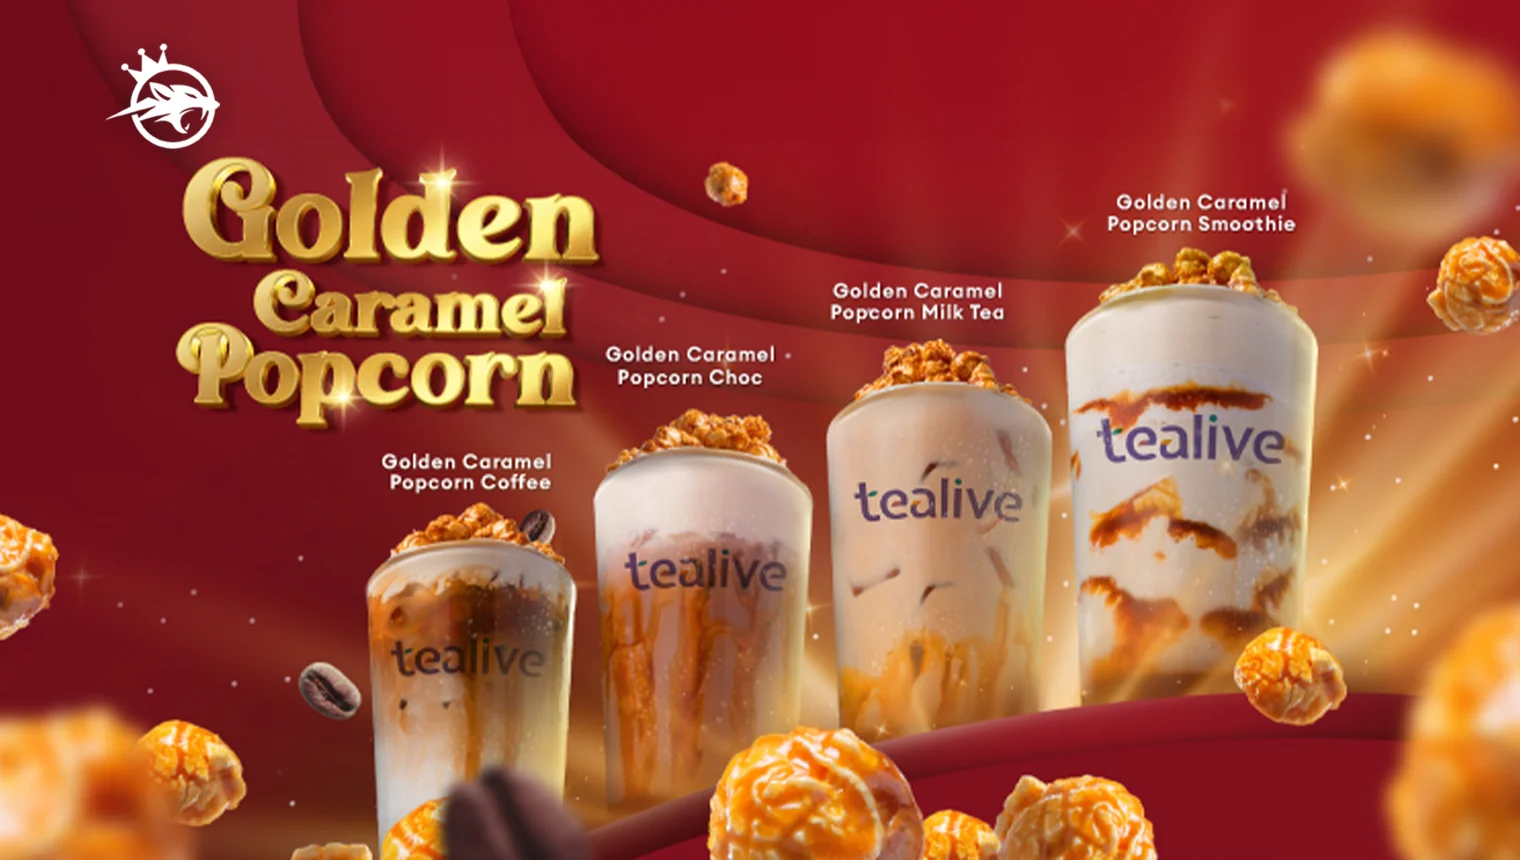 Tealive Golden Caramel Popcorn